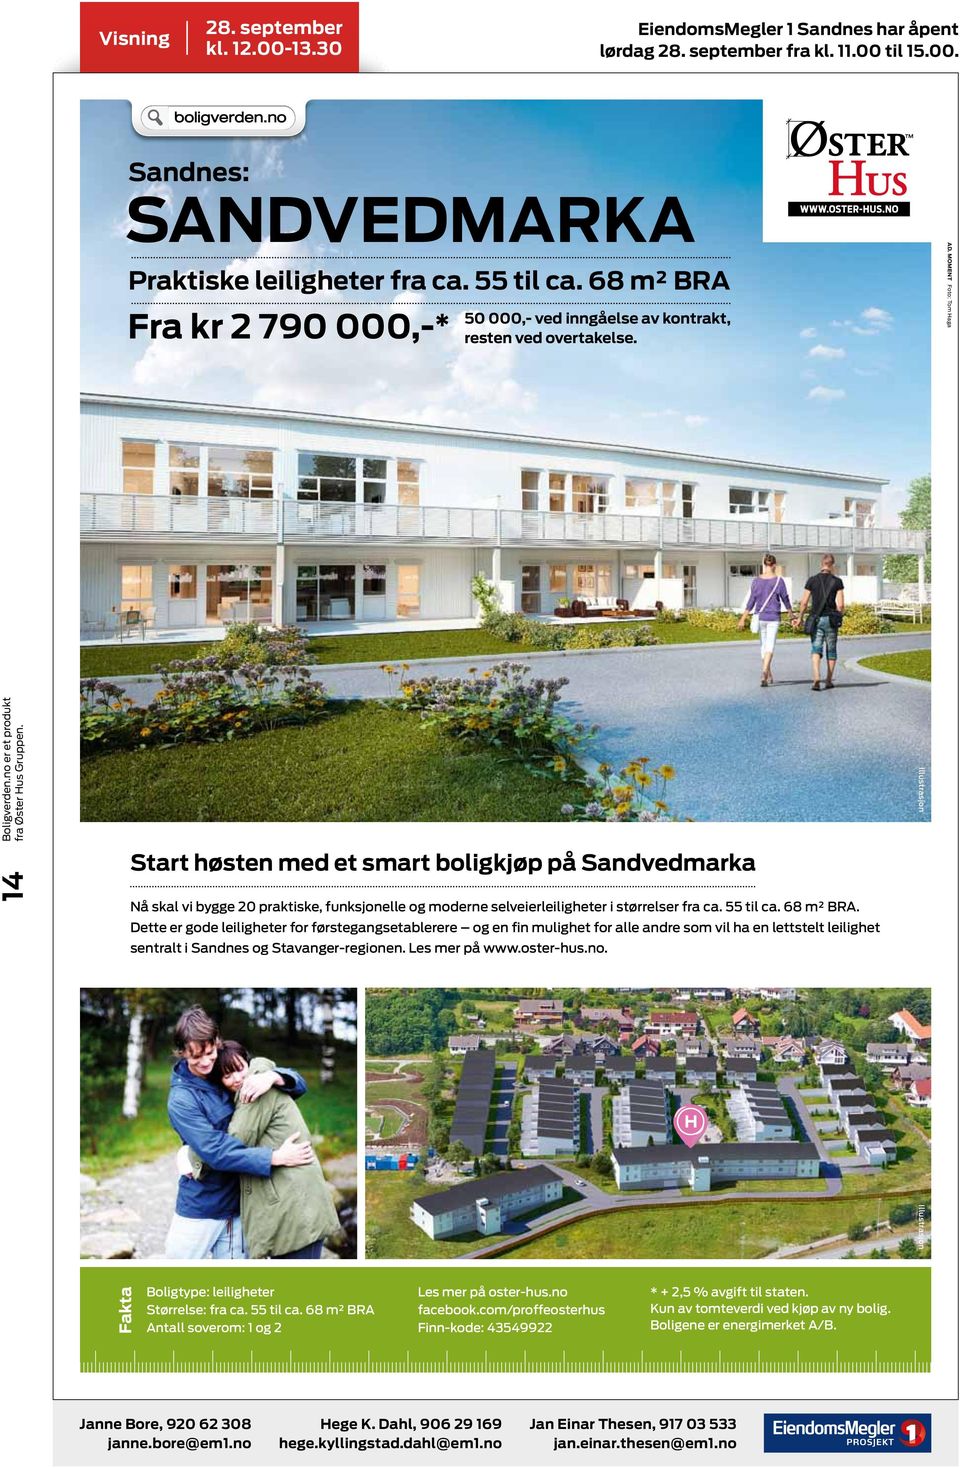 Dette er gode leiligheter for førstegangsetablerere og en fin mulighet for alle andre som vil ha en lettstelt leilighet sentralt i Sandnes og Stavanger-regionen. Les mer på www.oster-hus.no.